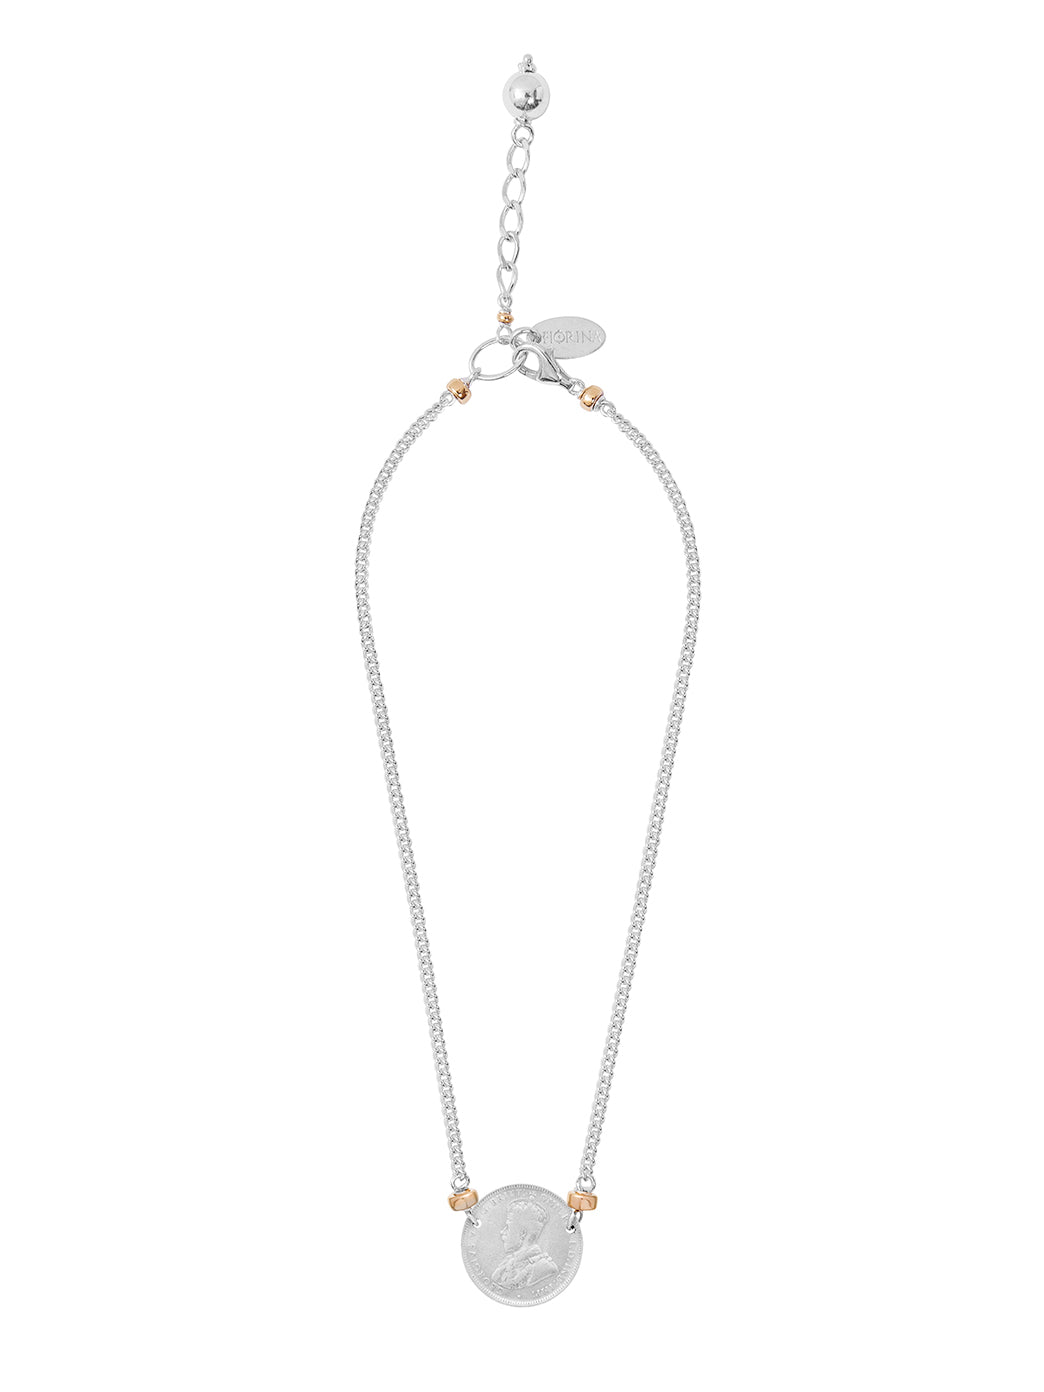 Fiorina Jewellery Mini Falcon Necklace